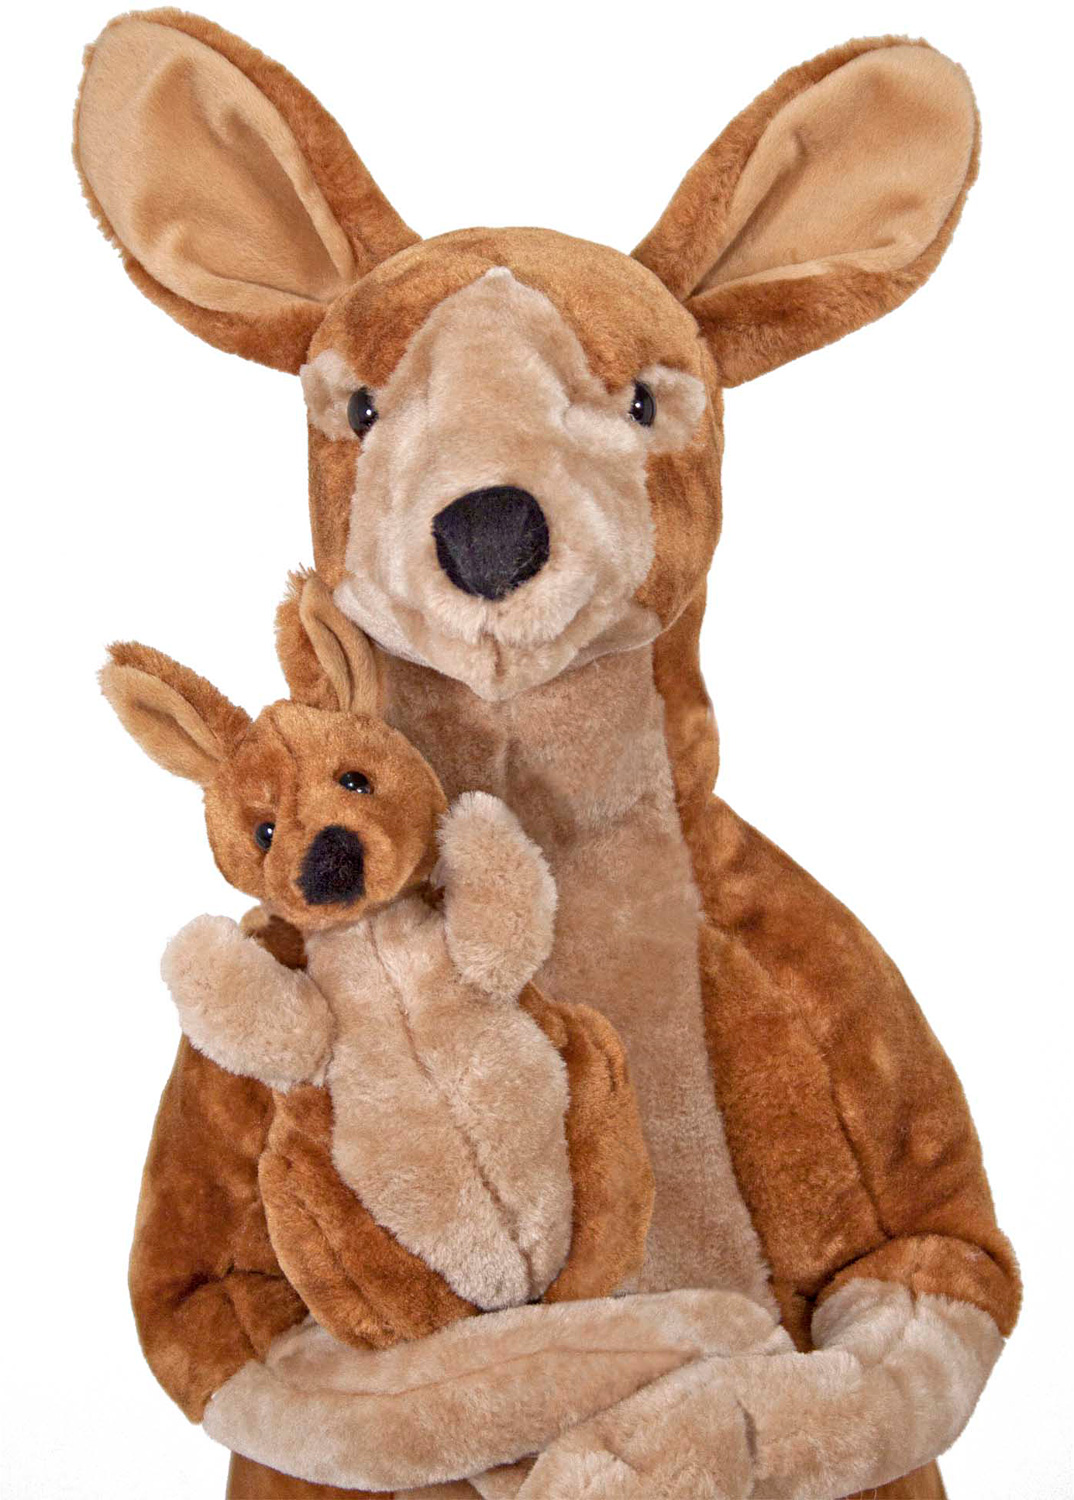 Kangaroo and Joey Lifelike Stuffed Animal | Kazoo Toys